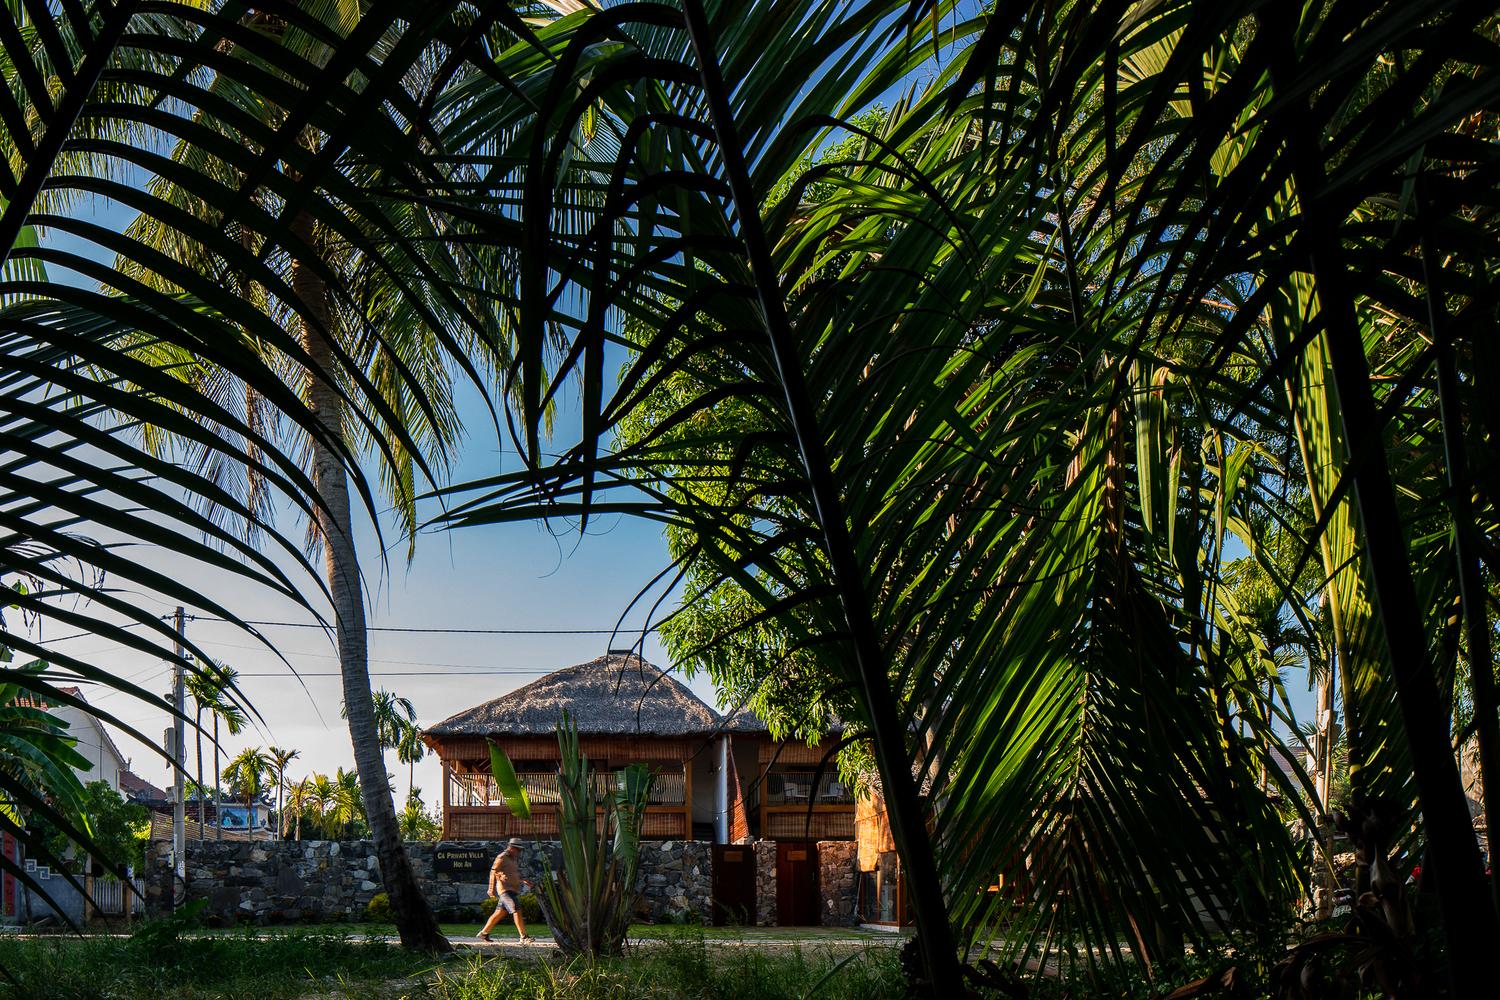 Ngôi nhà hoà hợp với môi trường xung quanh - nơi bao quanh bởi rừng dừa nước, vốn là nét đặc trưng bản địa của khu vực này.